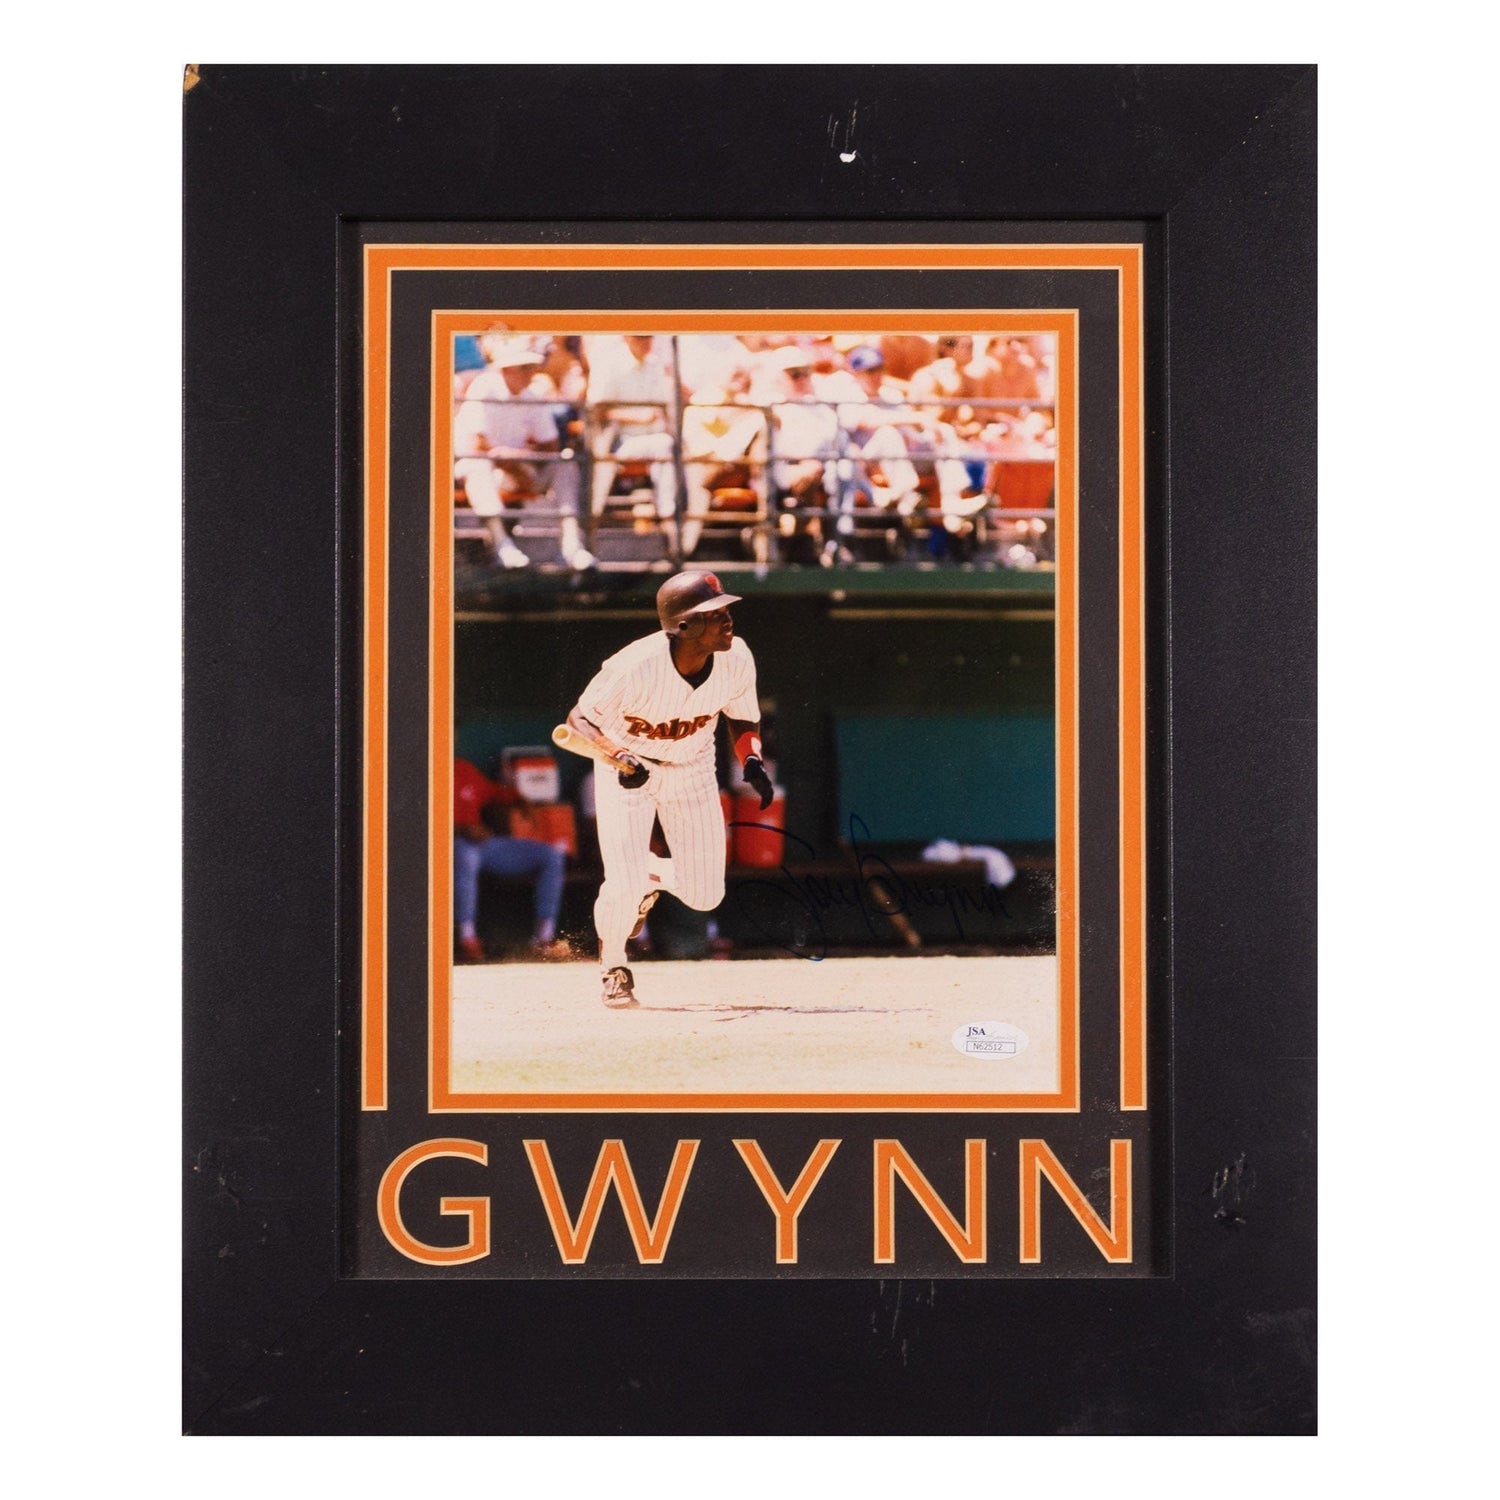 Tony Gwynn Autographed Photo – Gold & Silver Pawn Shop